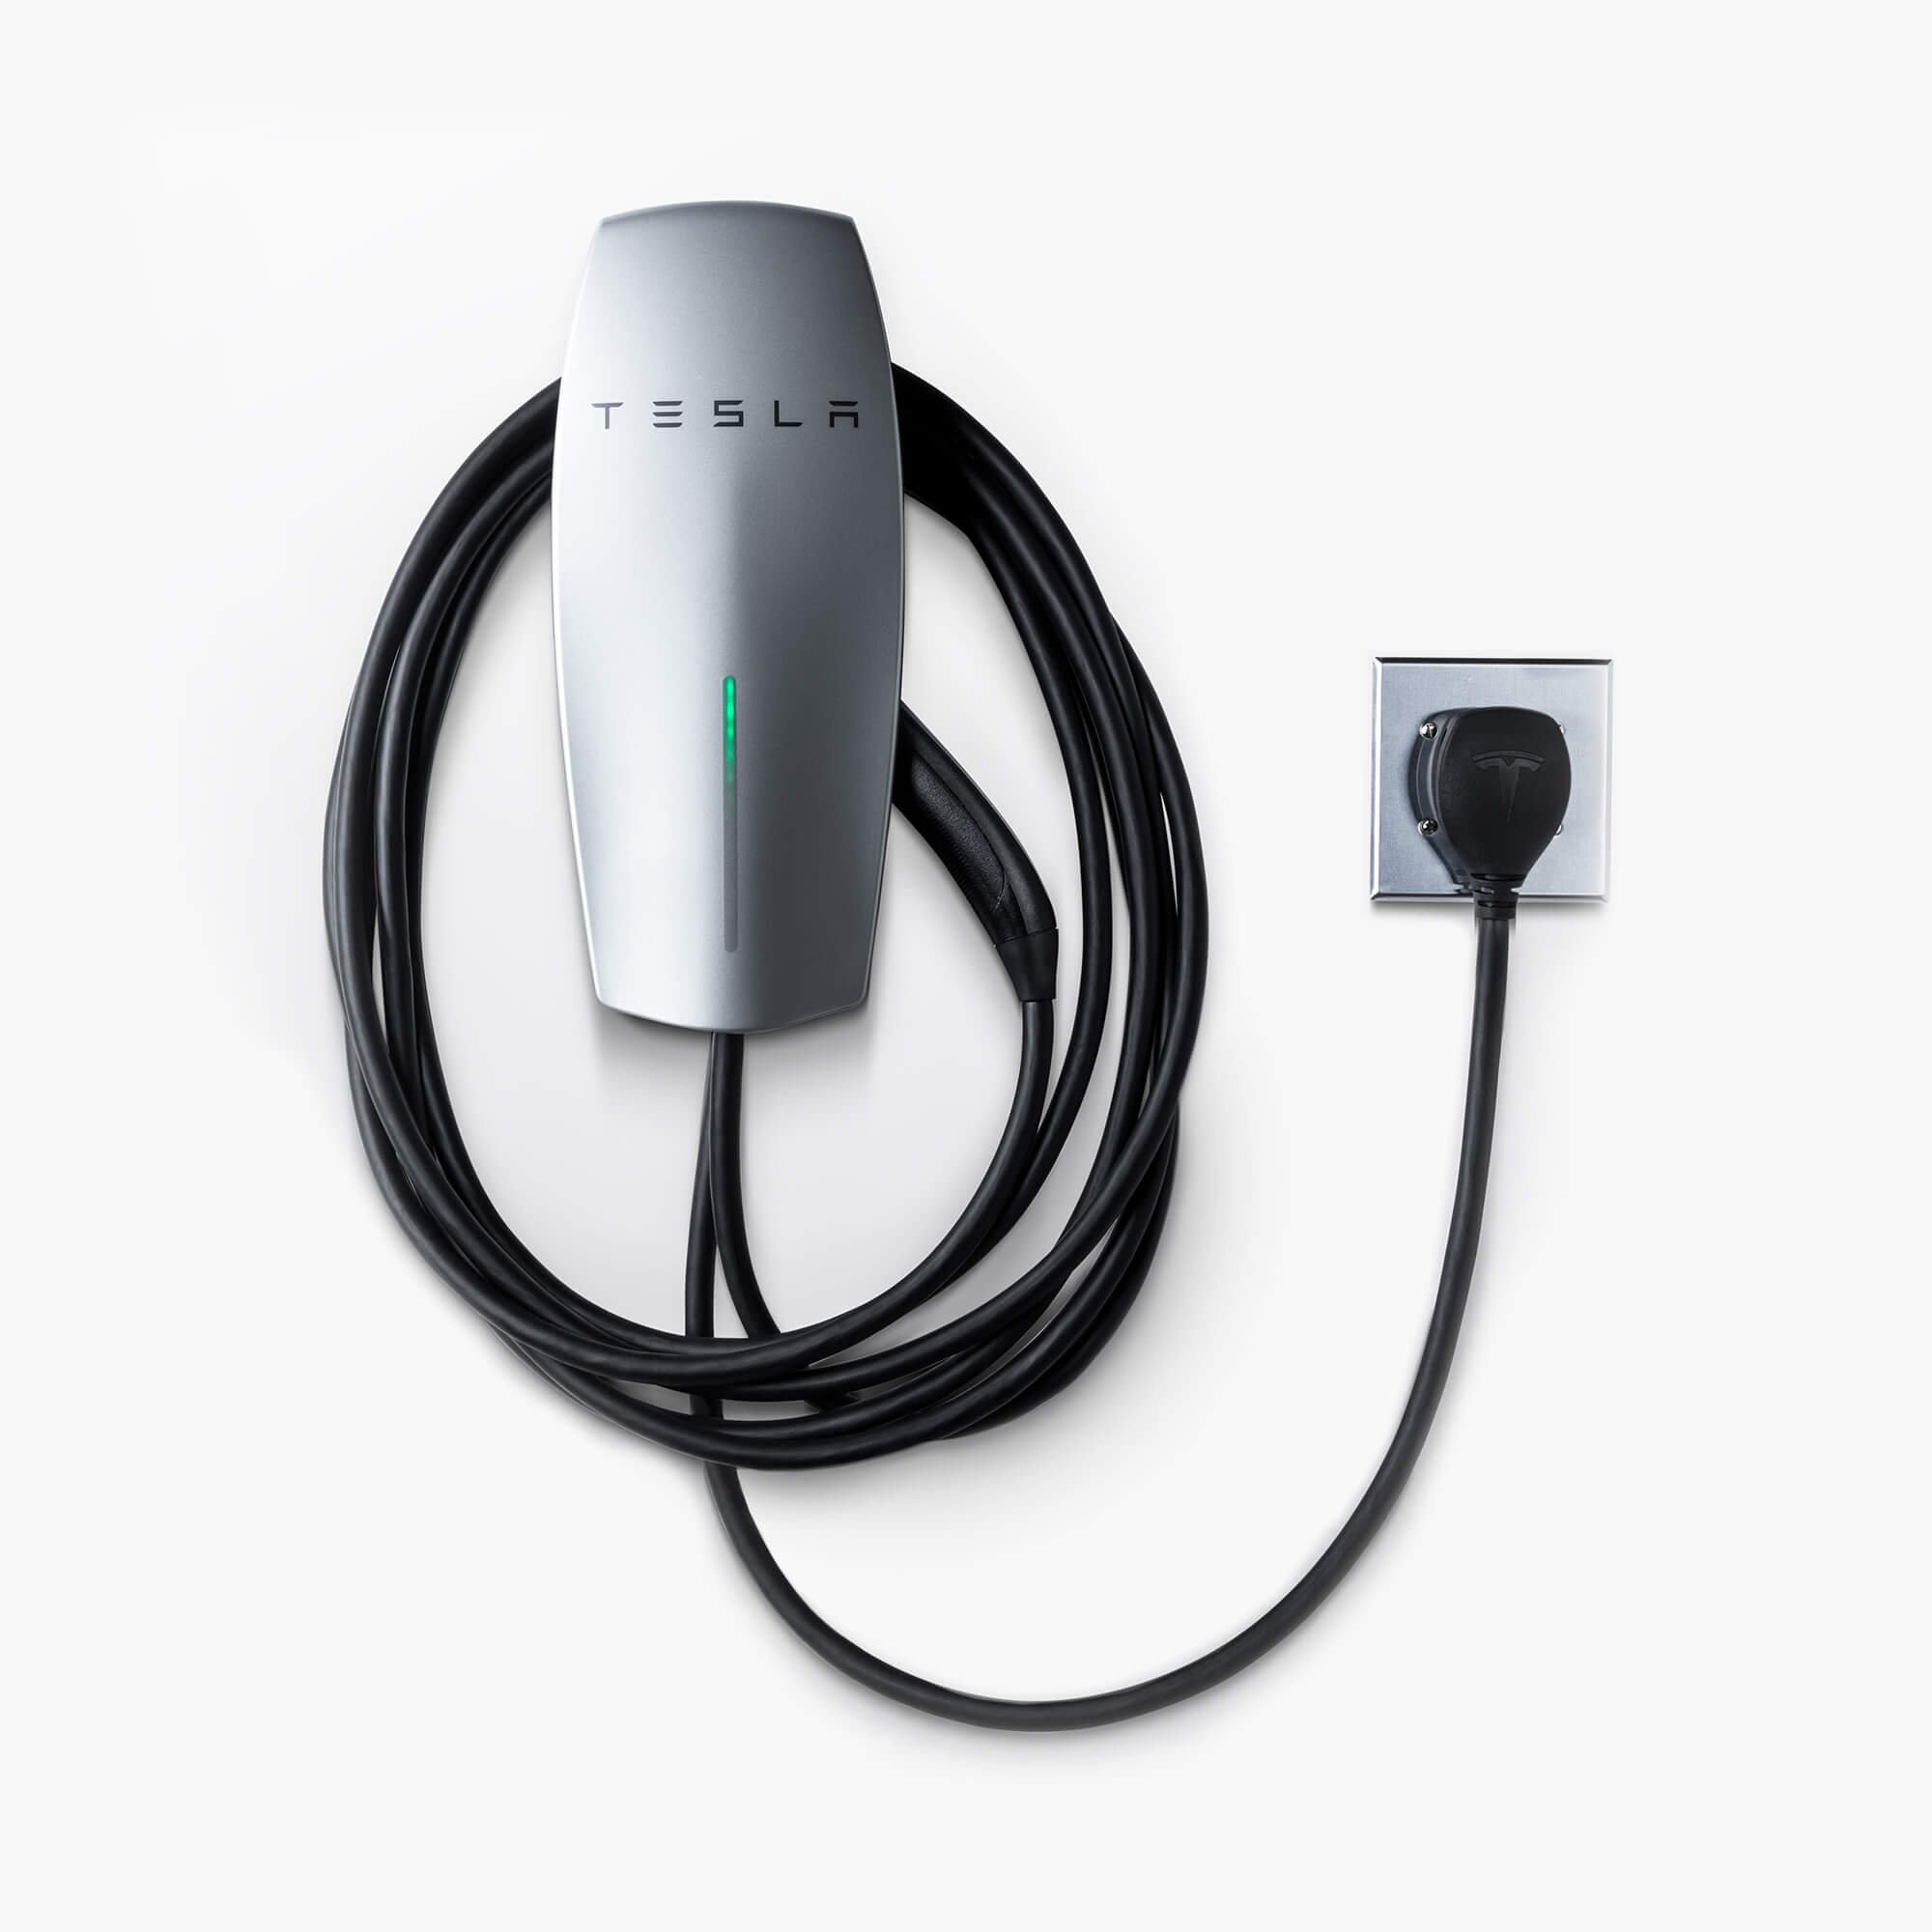 Tesla выпустила новое зарядное устройство Wall Connector стоимостью $500 для прямого подключения к розеткам NEMA 14-50